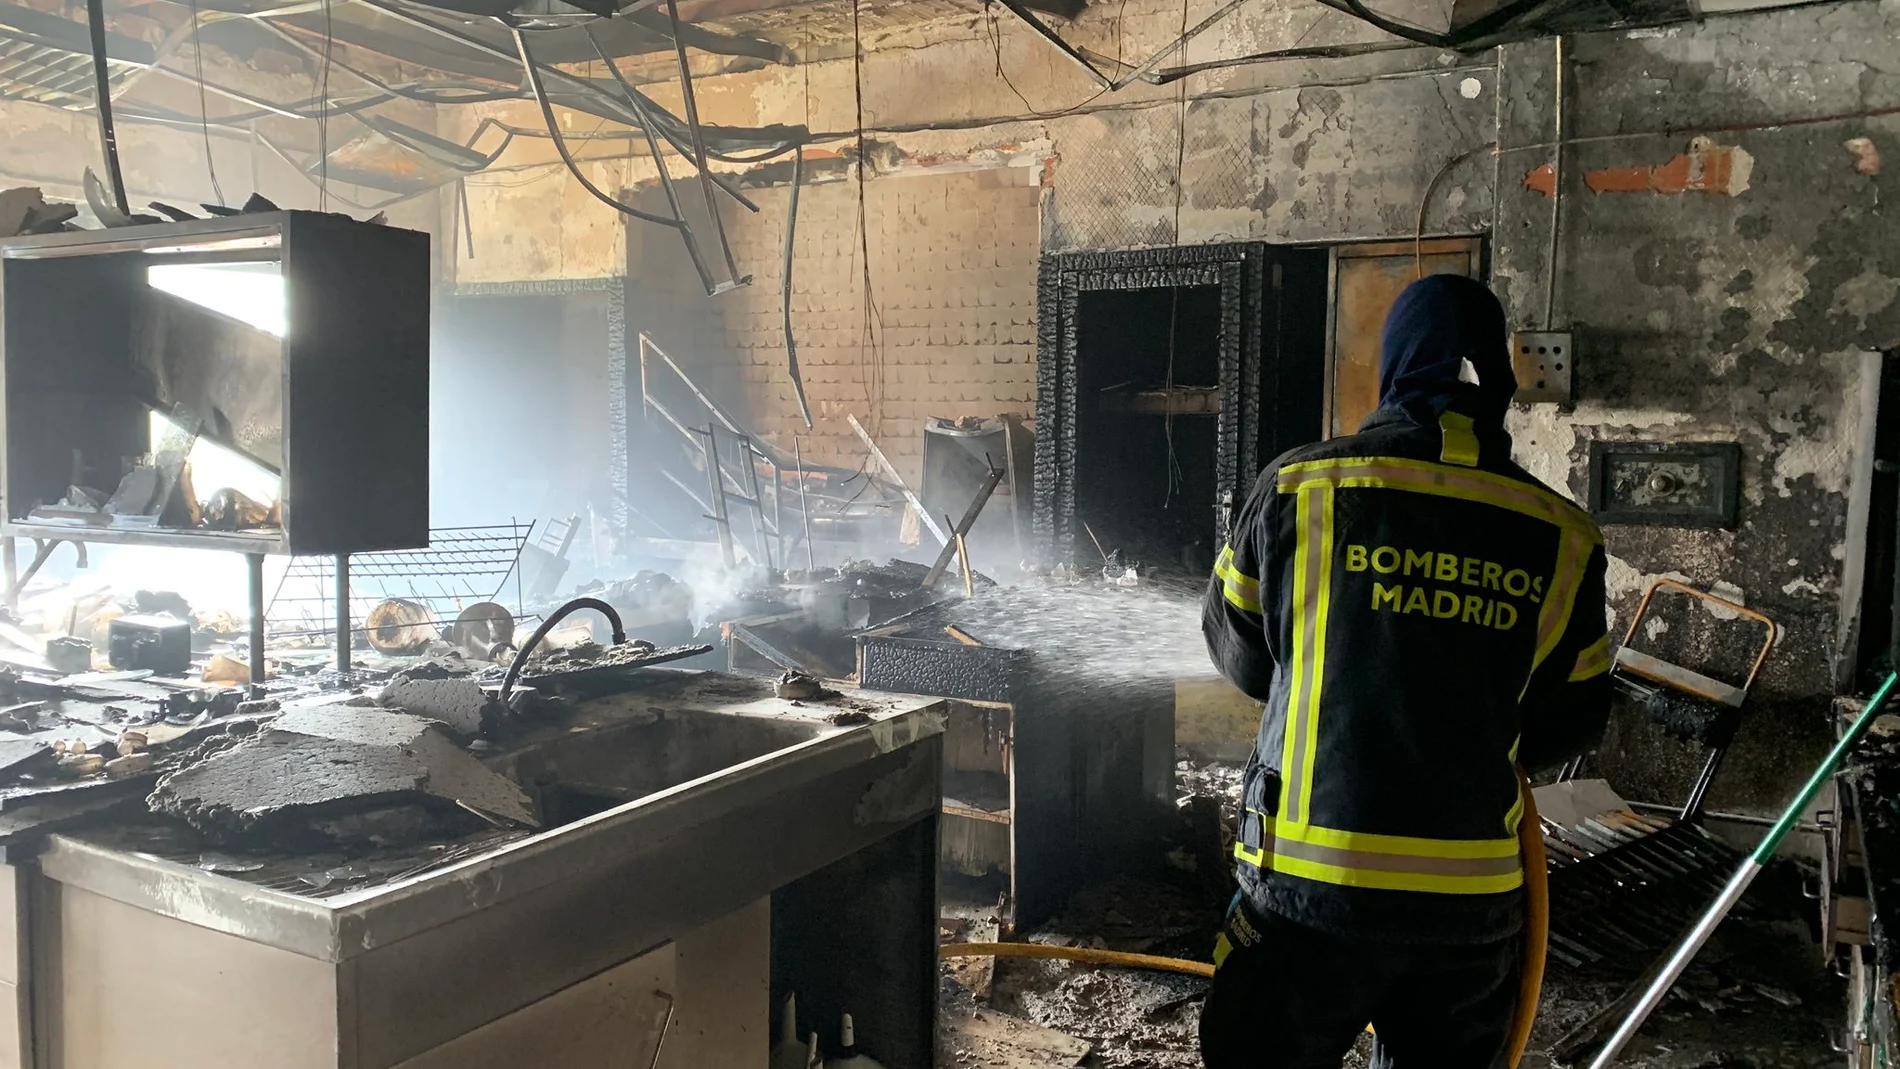 Siete dotaciones de Bomberos del Ayuntamiento han extinguido el fuego que se ha iniciado en un laboratorio de química